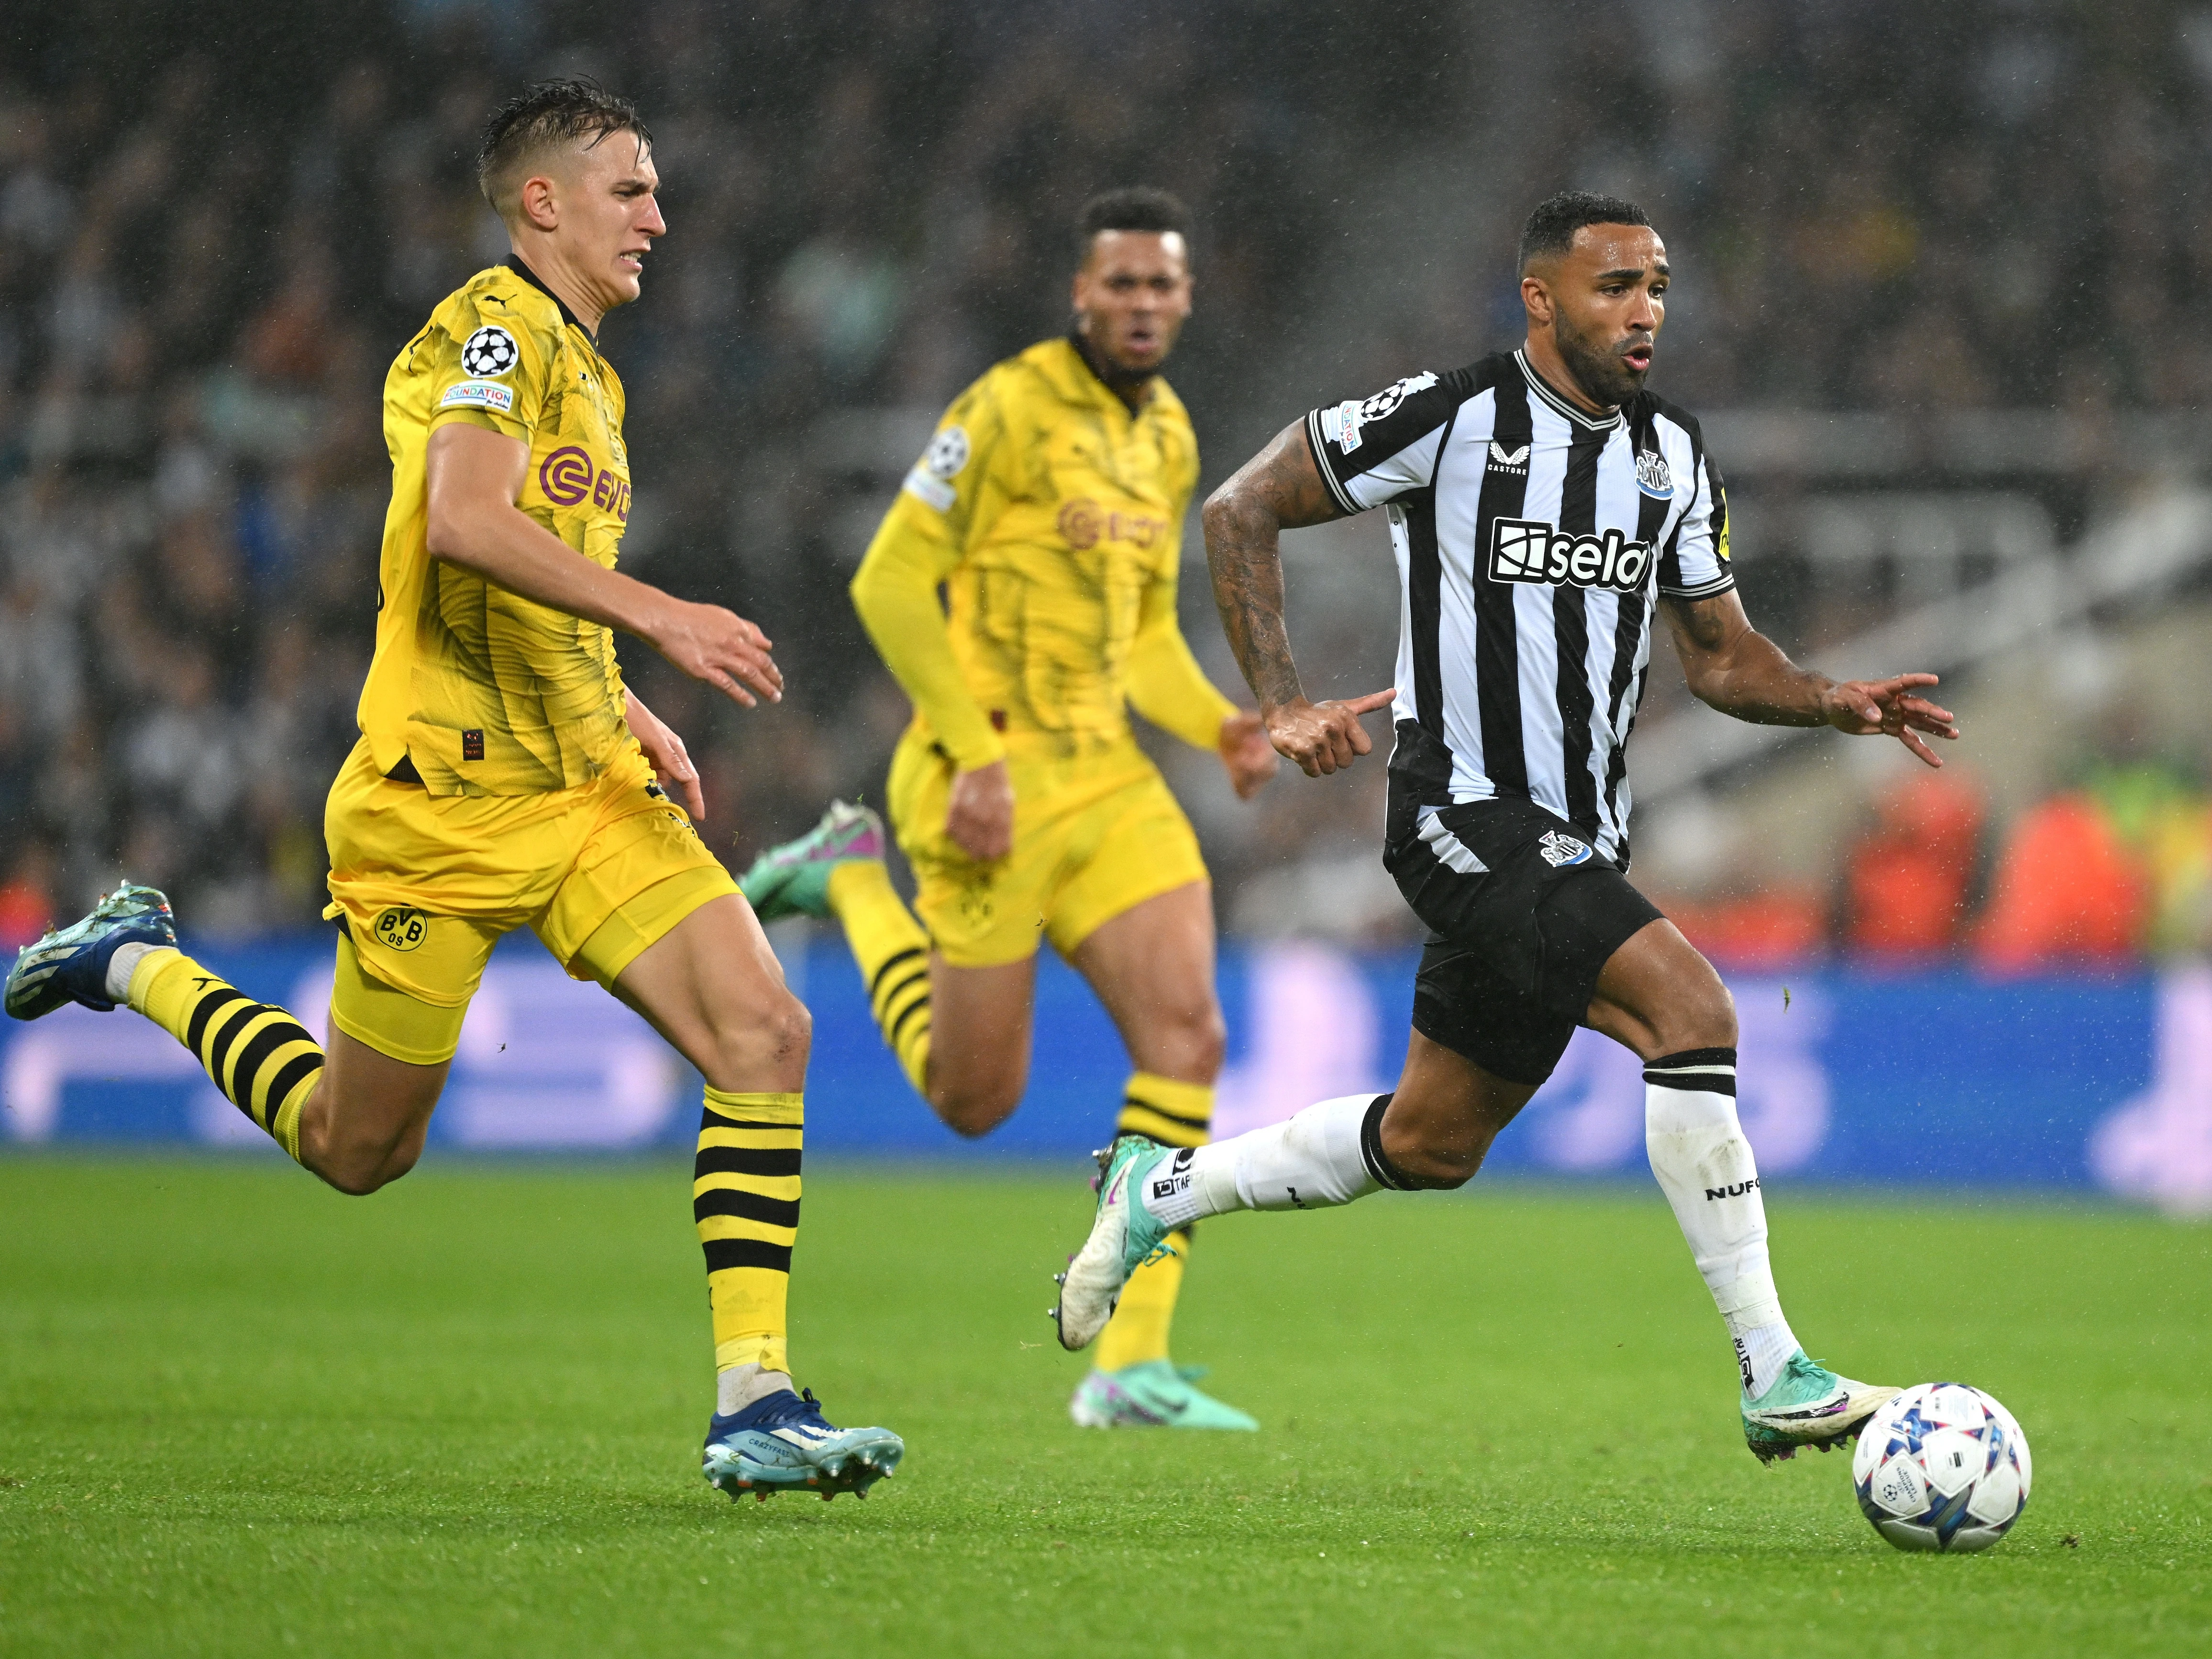 Newcastle v Dortmund 23/24 image 